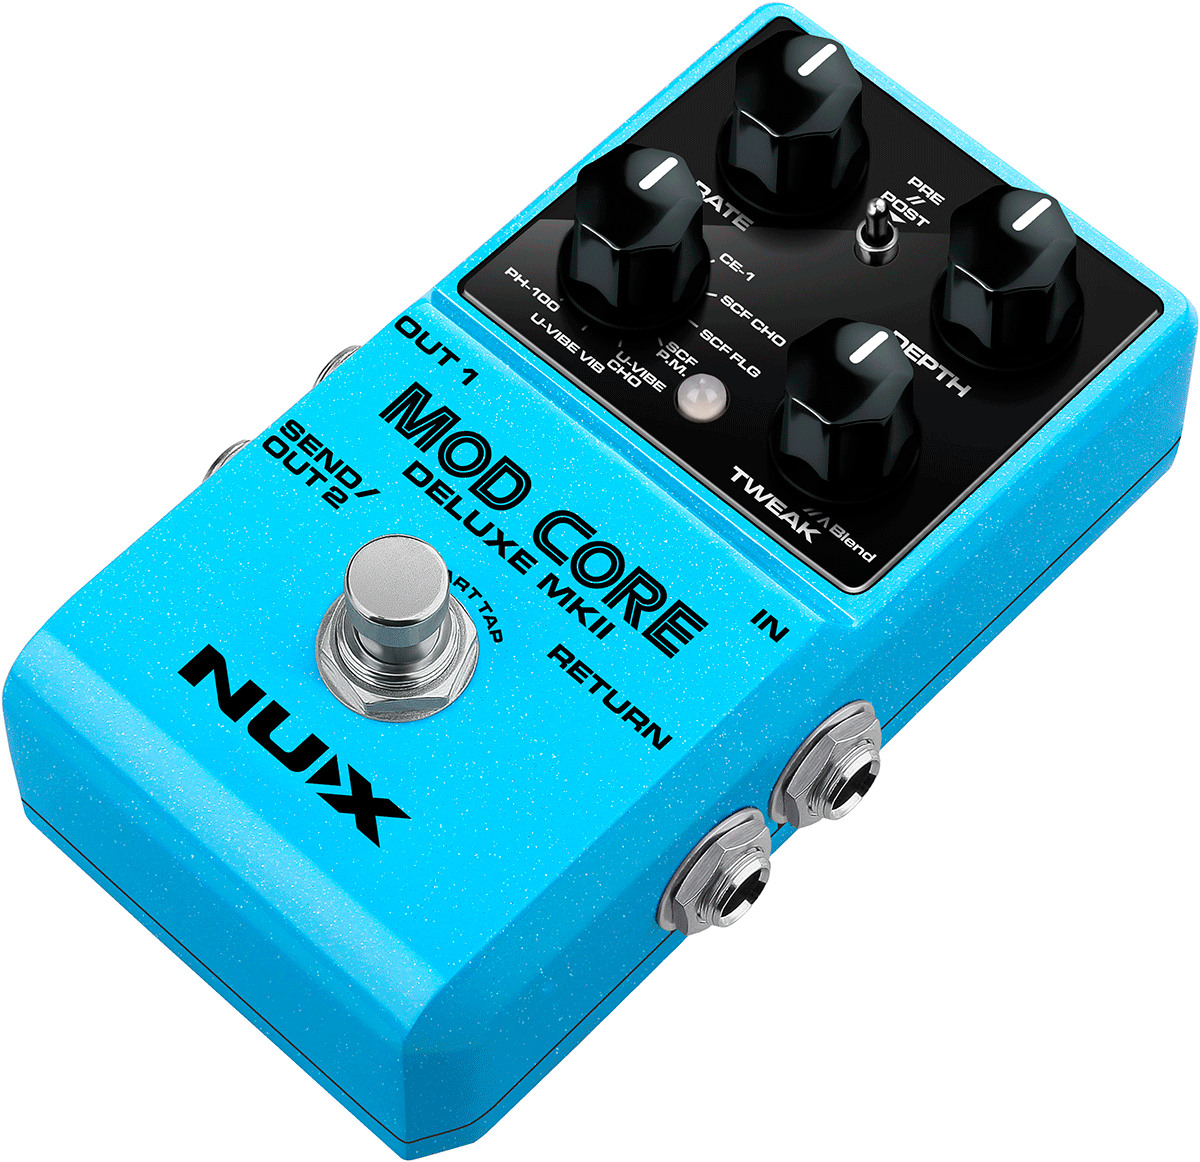 MODCORE-DLX-MK2 - Modulation pedal